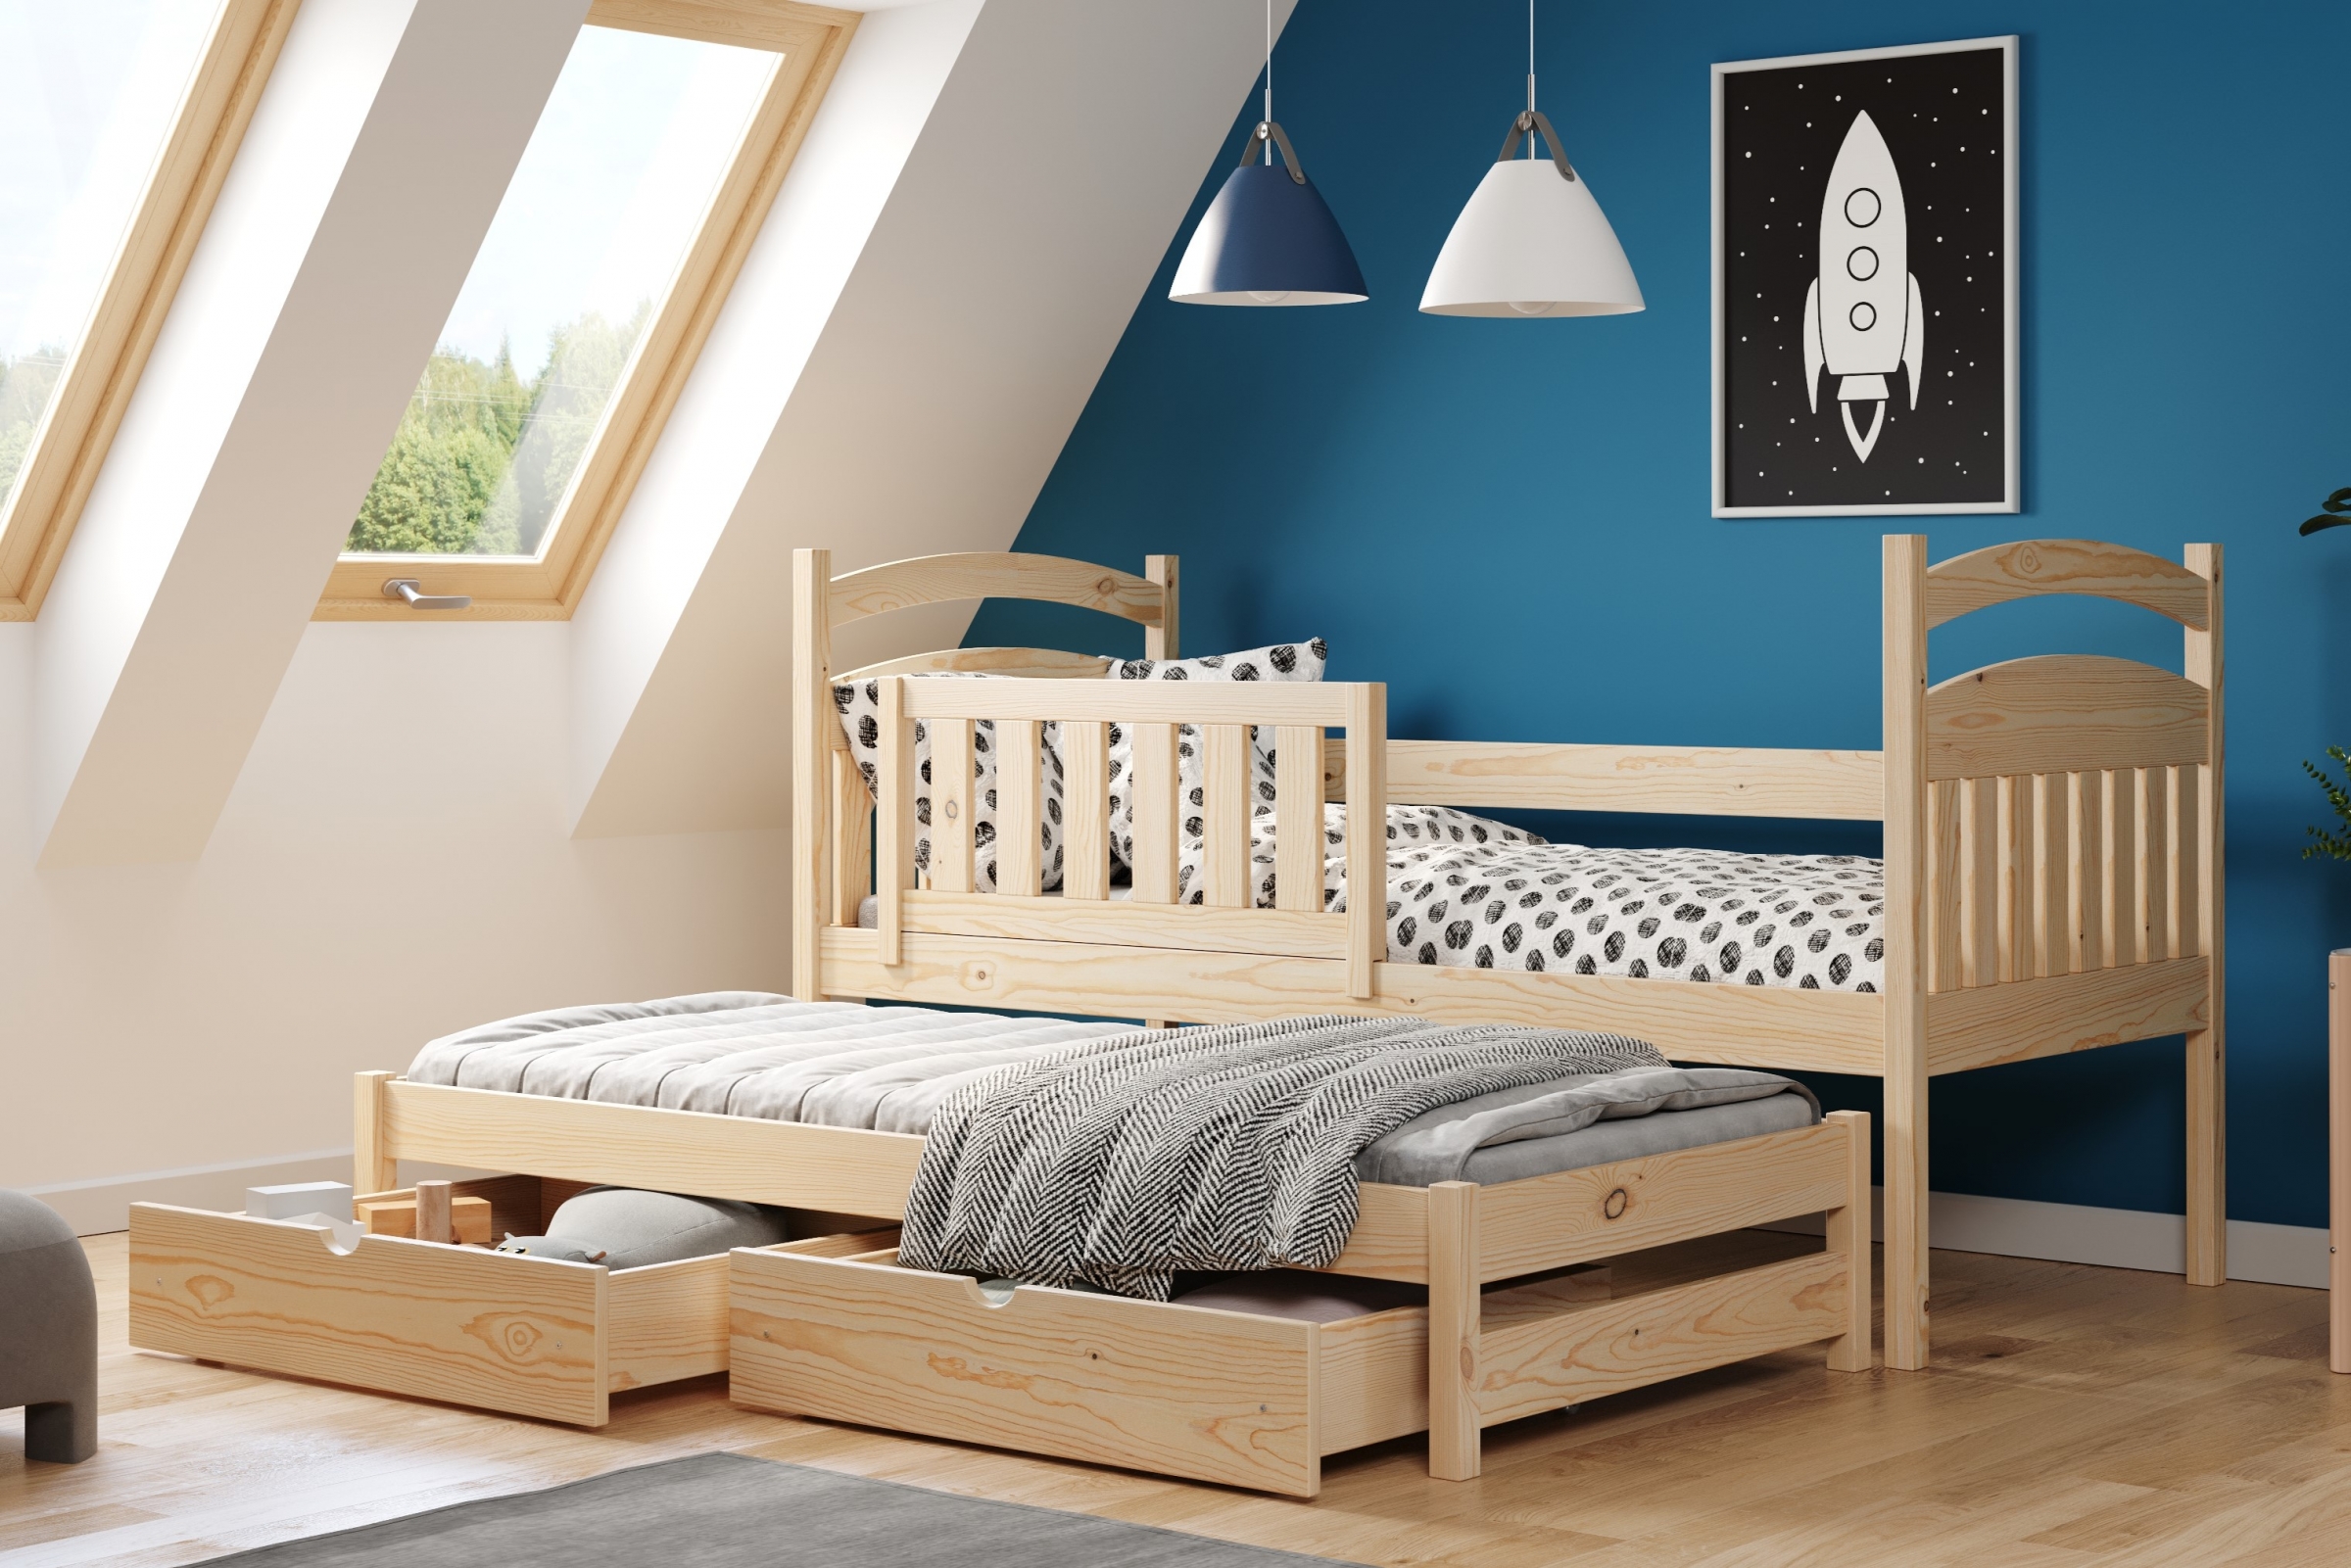 Detská posteľ prízemná výsuvna Amely - Farba Borovica, rozmer 80x180 Posteľ dzieciece prízemná s výsuvným lôžkom Amely - Farba Borovica - vizualizácia